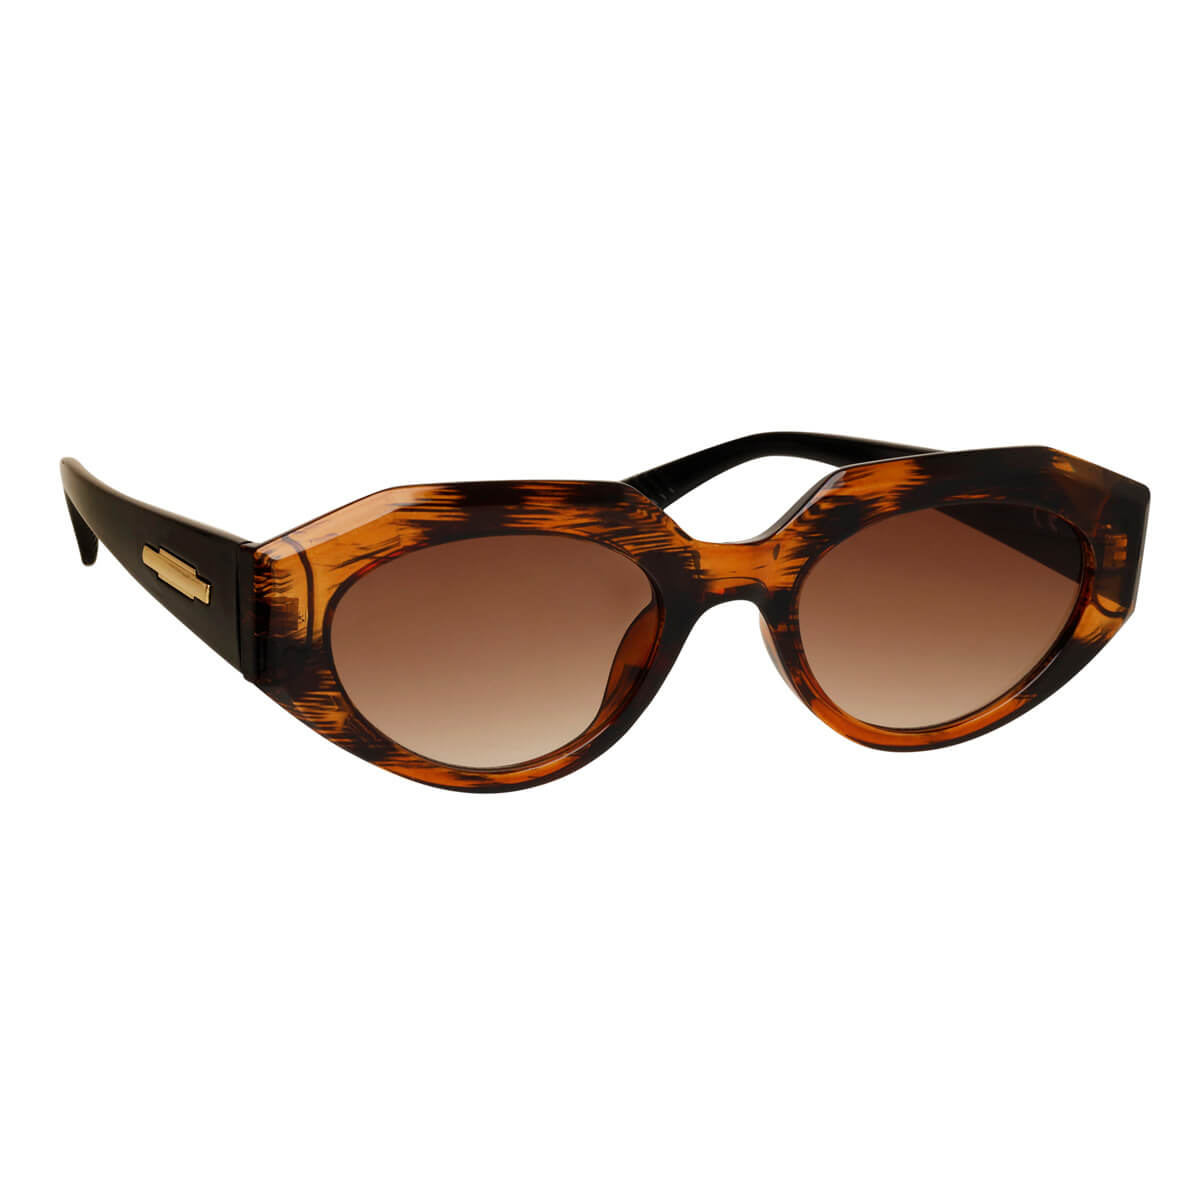 Angular oval sunglasses